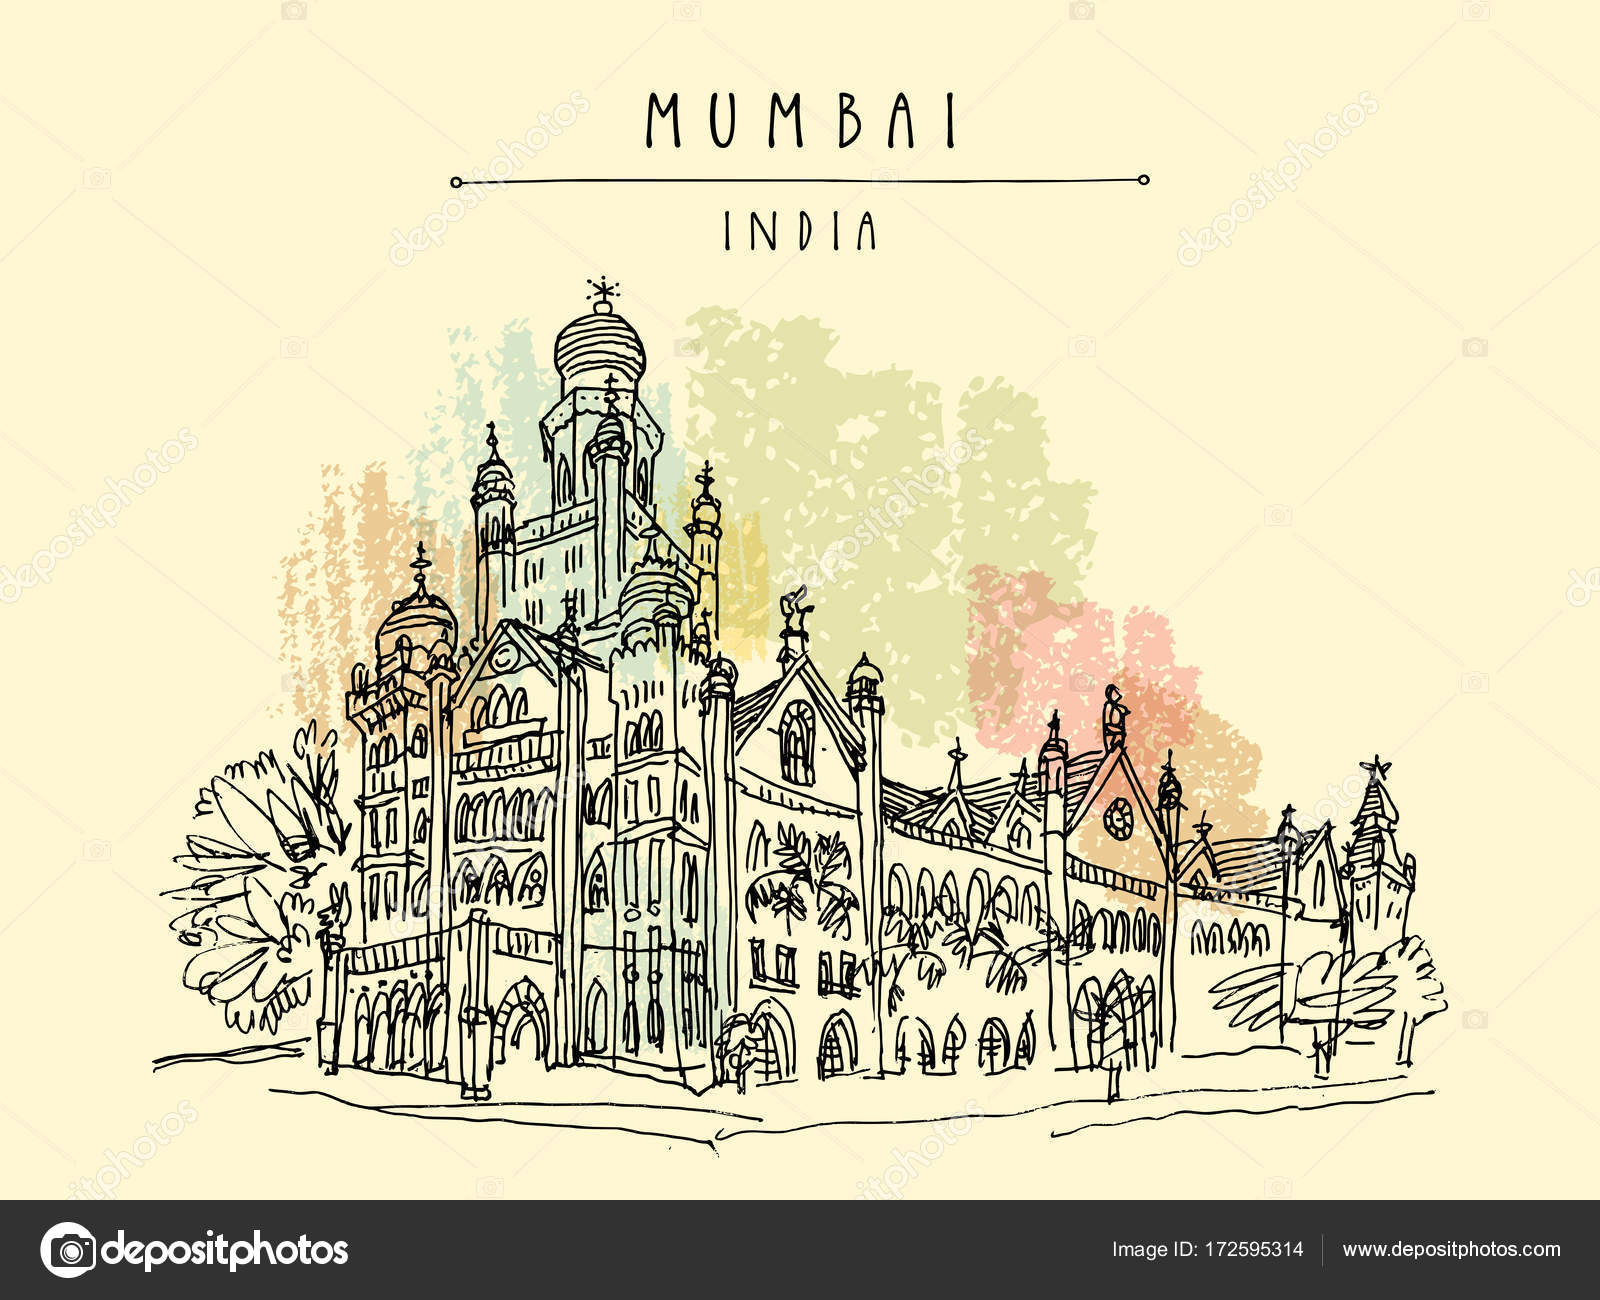 Gateway of India -Mumbai, Maharashtra, India - sketch post - Imgur